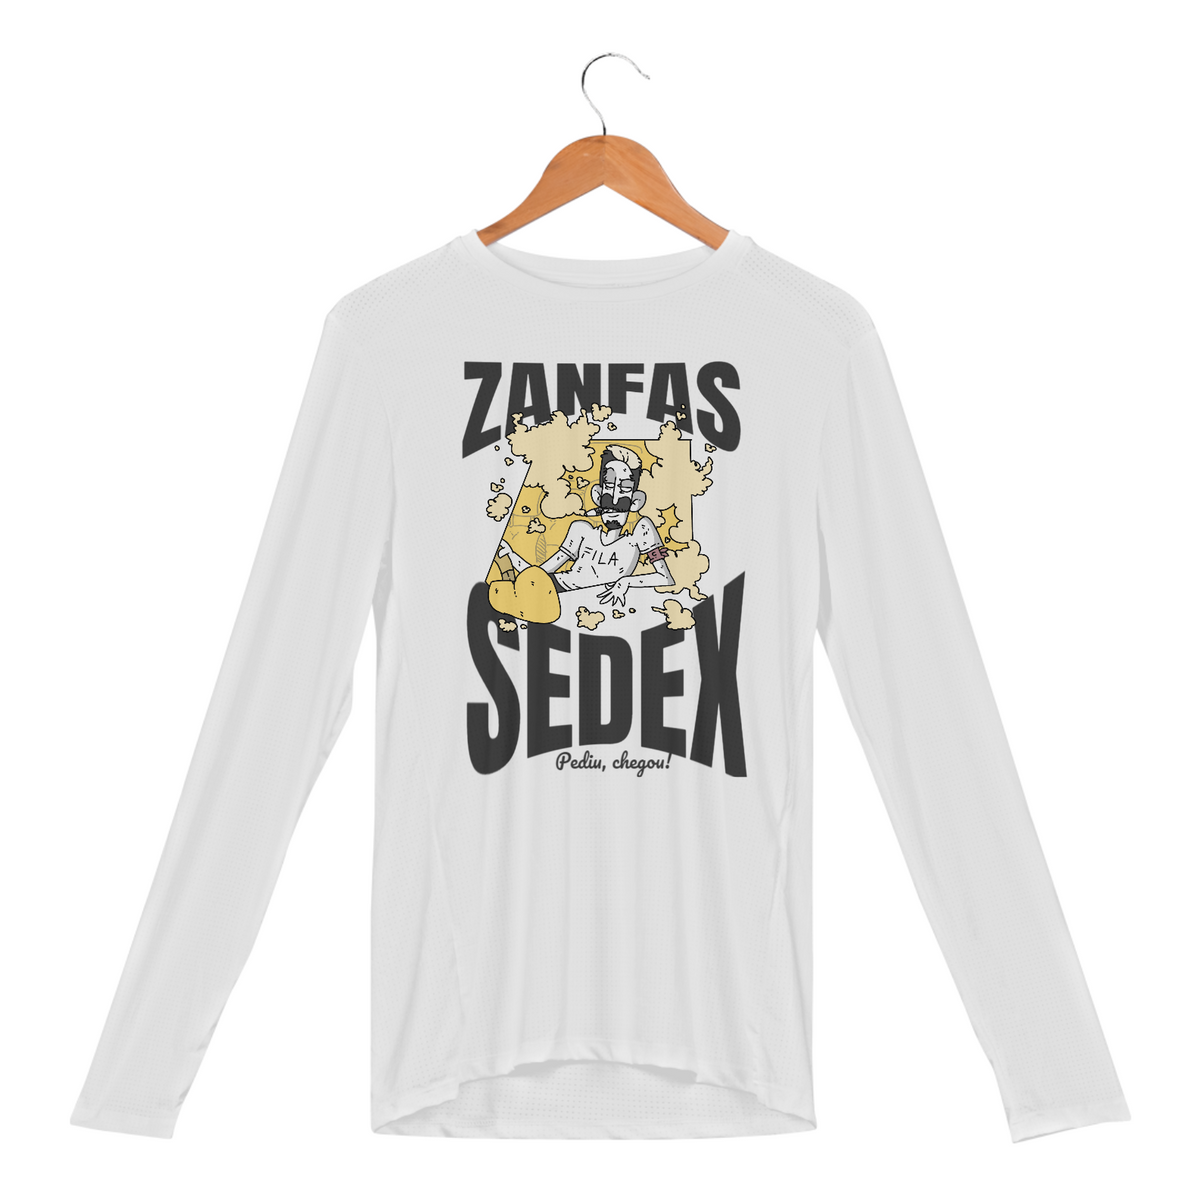 Nome do produto: Camisa manga longa - Zanfas Sedex - versão 2